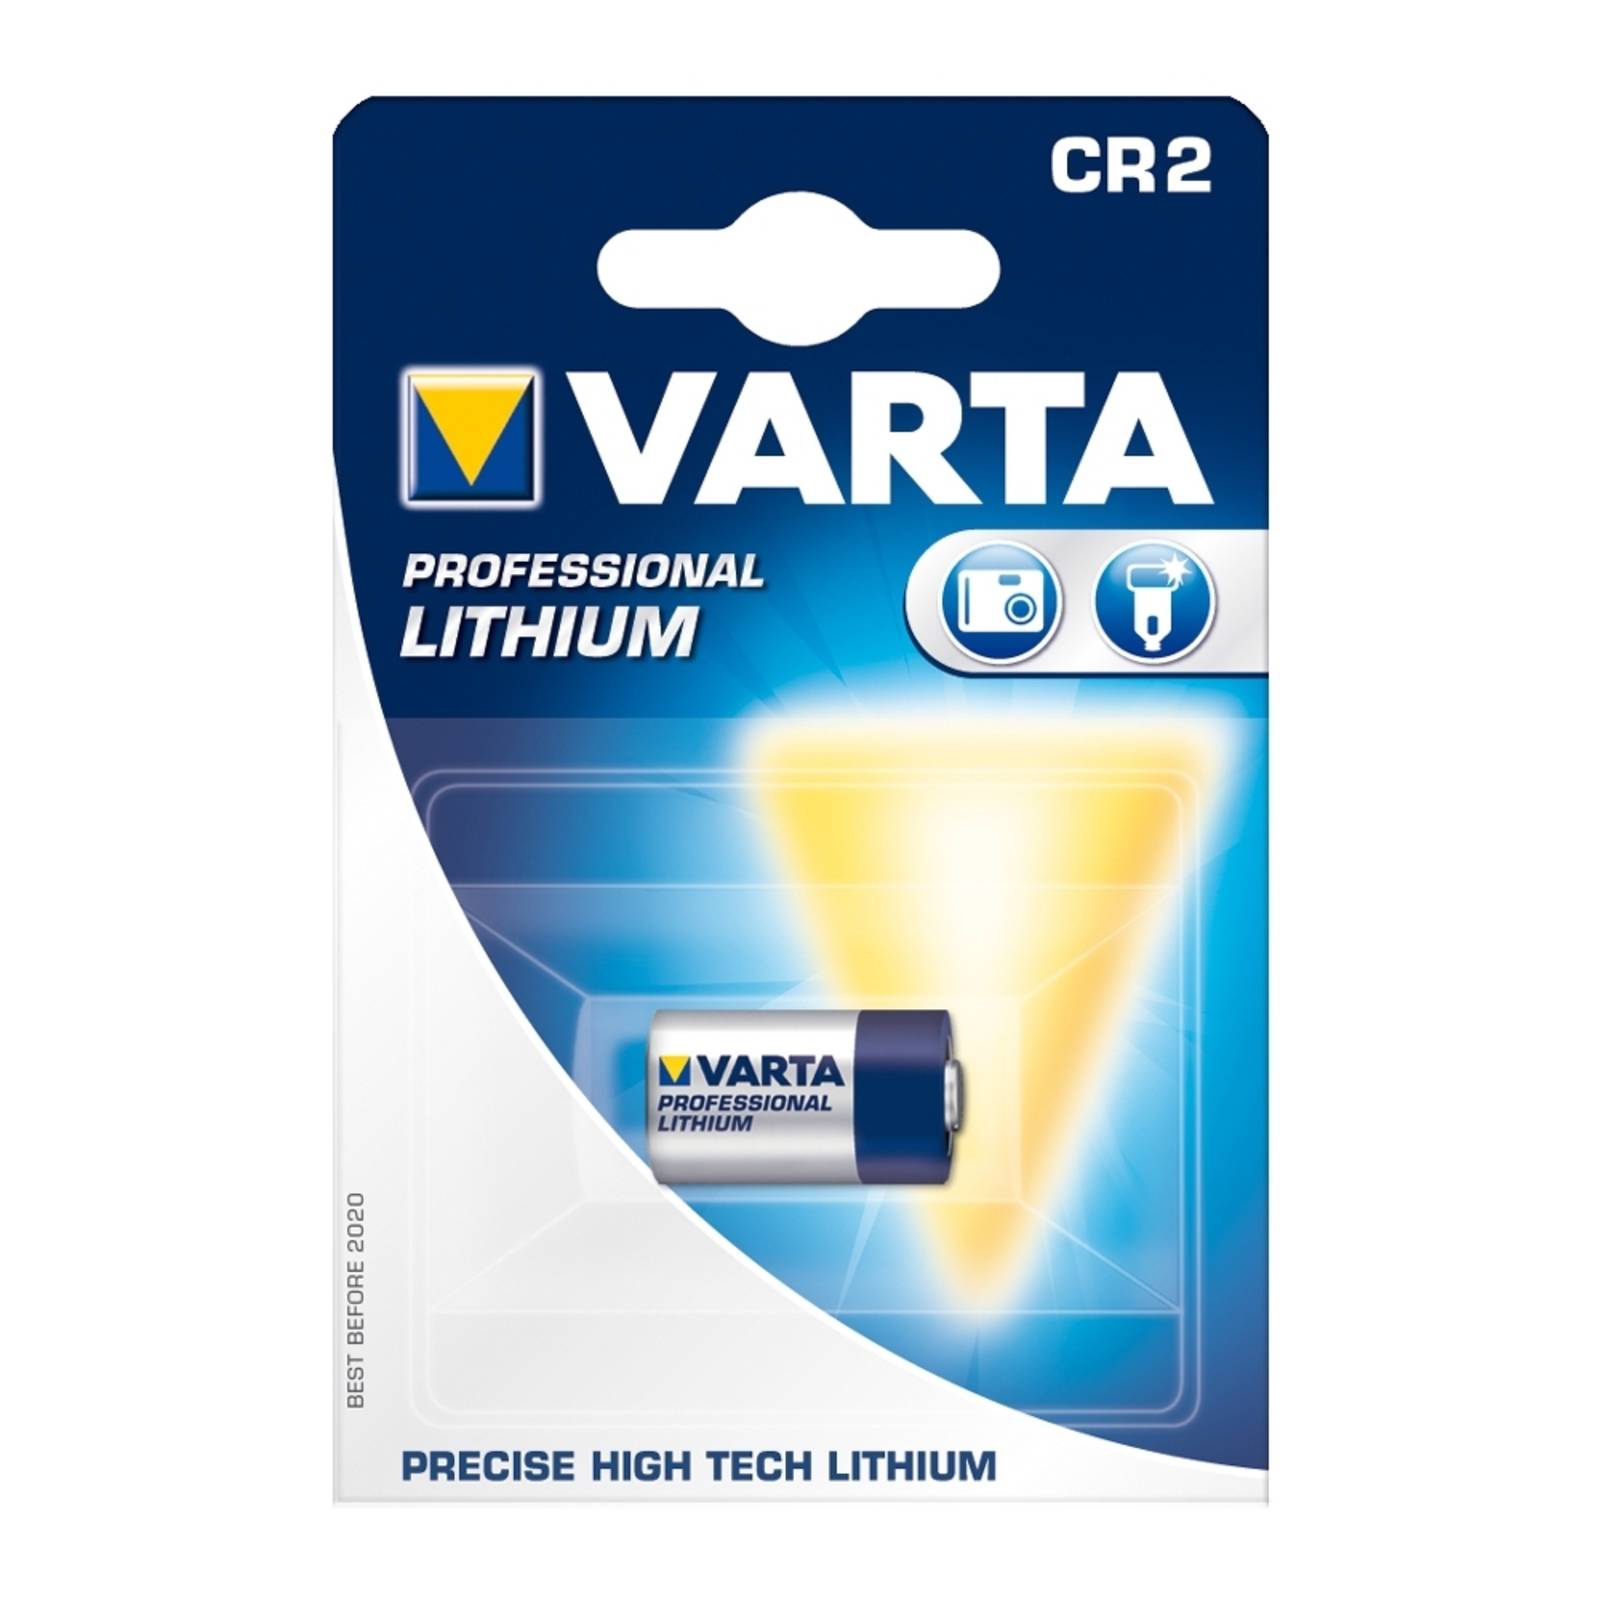 E-shop Lítiová batéria CR2 (6206) 3V VARTA